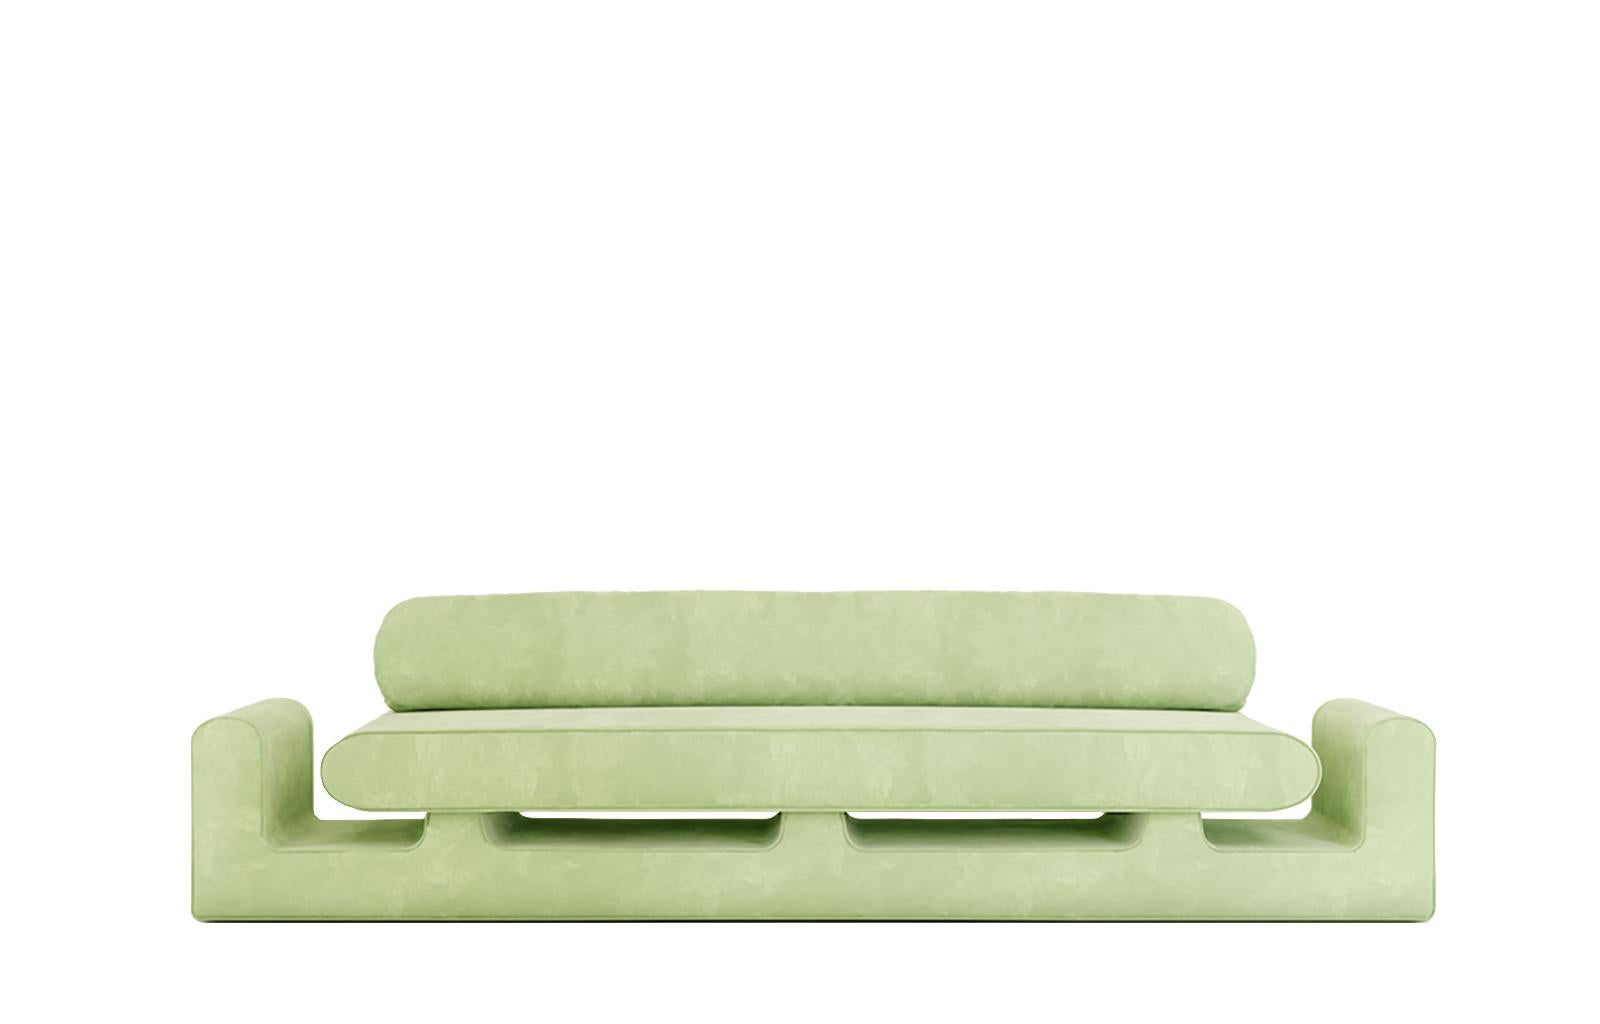 Grünes Sofa Hug von Rejo Studio.
Abmessungen: T 315 x B 95 x H 76 cm.
MATERIAL: Holzstruktur, mit Samt.
Auch in verschiedenen Farben erhältlich. 

Lange bequeme Umarmung. Das Umarmungssofa verfügt über zwei einladende, pummelige Arme und einen